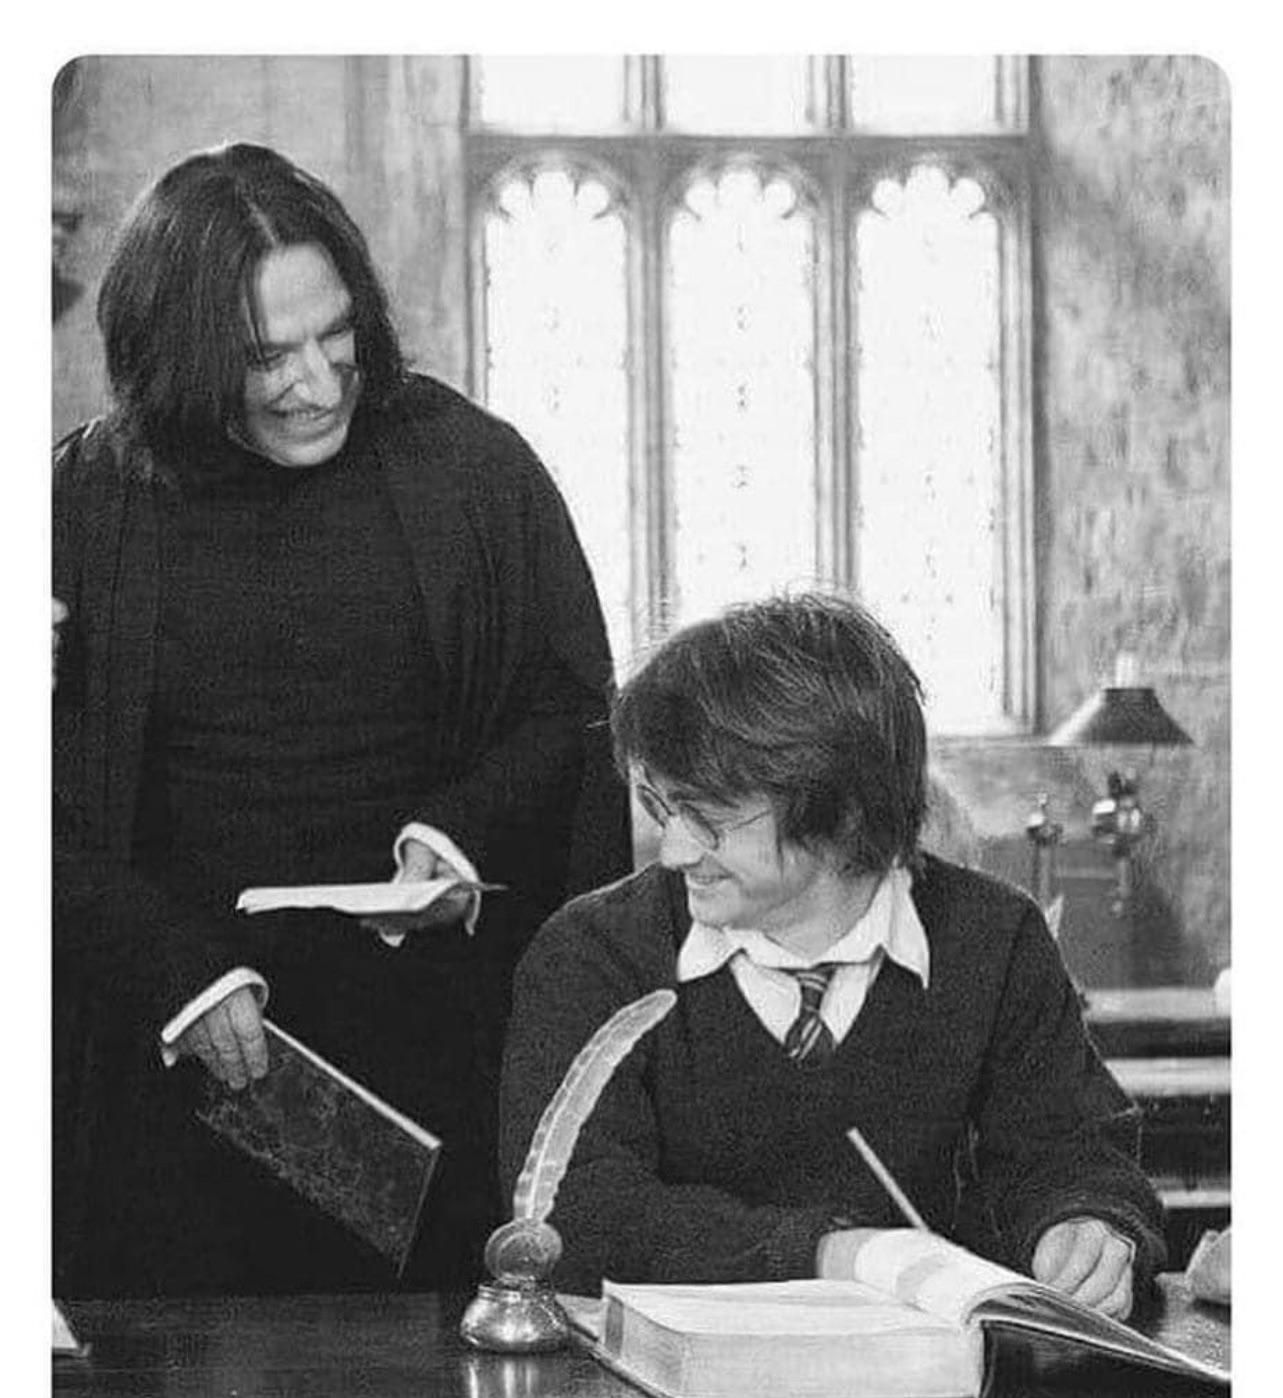 Ozzy Osbourne meeting John Lennon